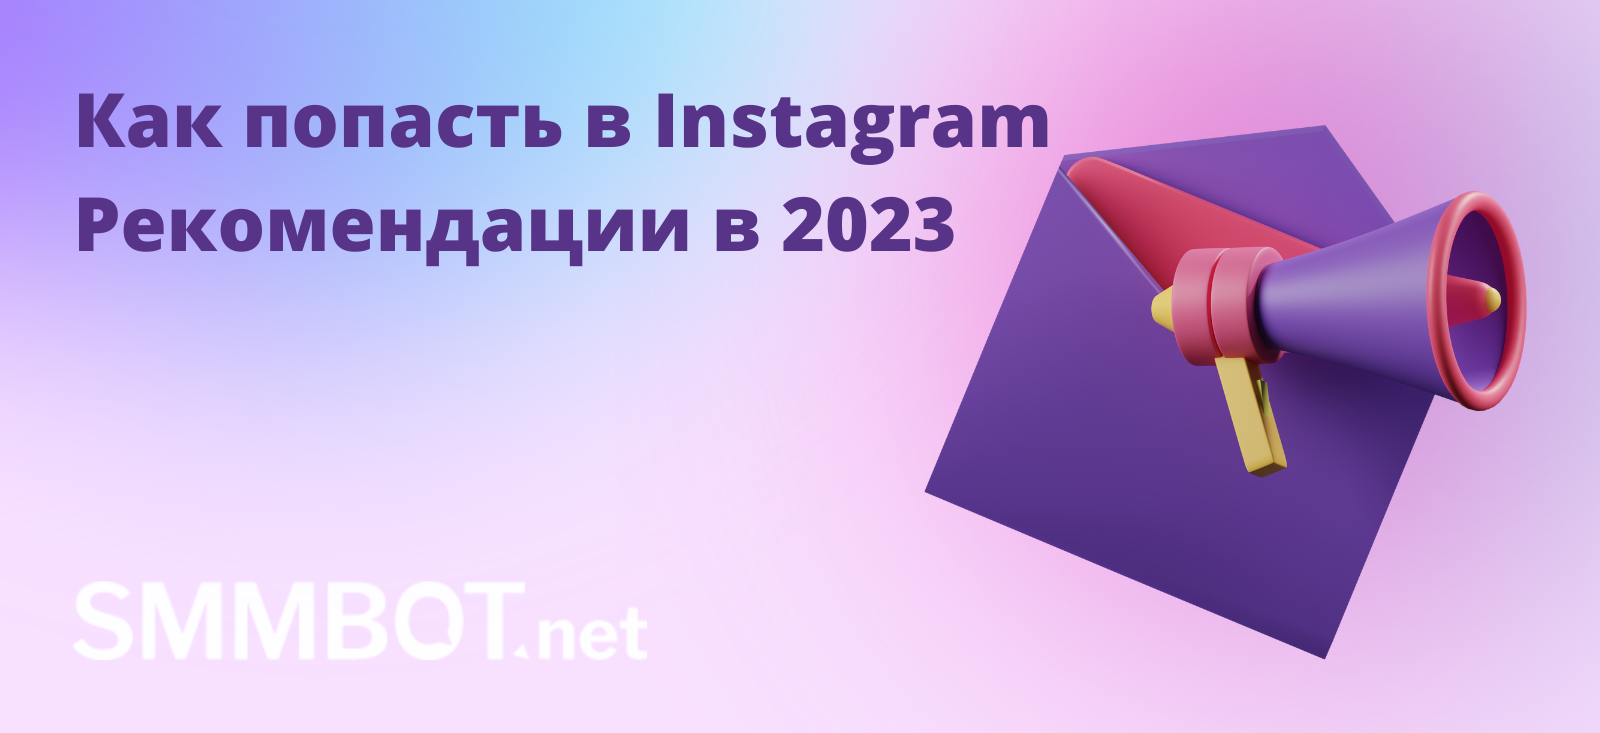 Как попасть в Instagram Рекомендации в 2023 году